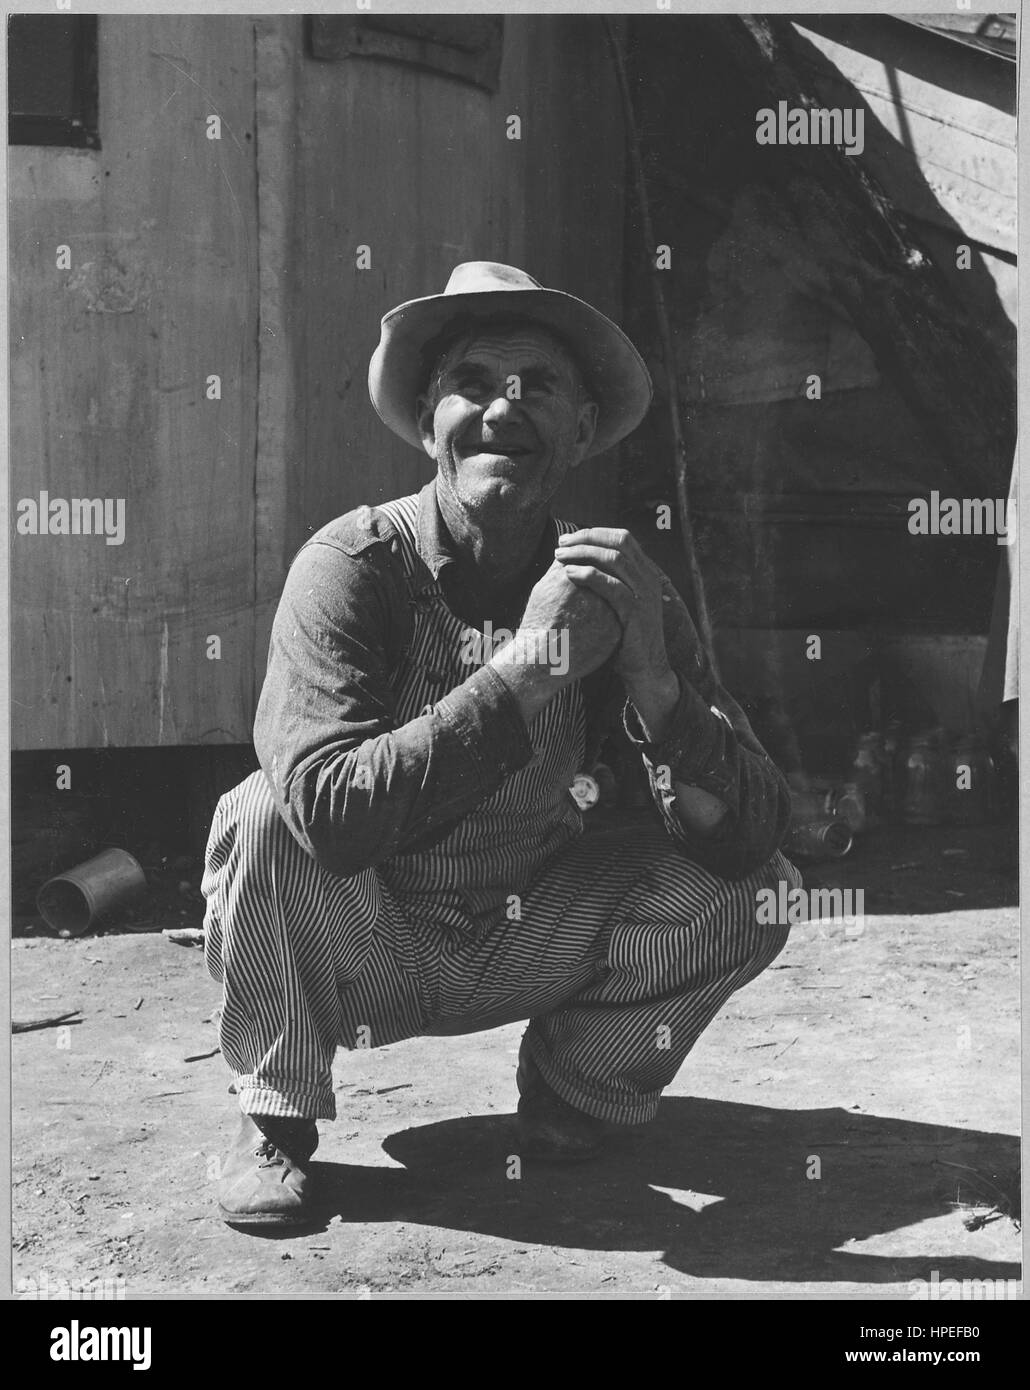 Fotografia di un azienda agricola migrante operaio squatting e sorridente, Olivehurst, California, 20 marzo 1940. Immagine cortesia Dorothea Lange/US National Archives. Foto Stock